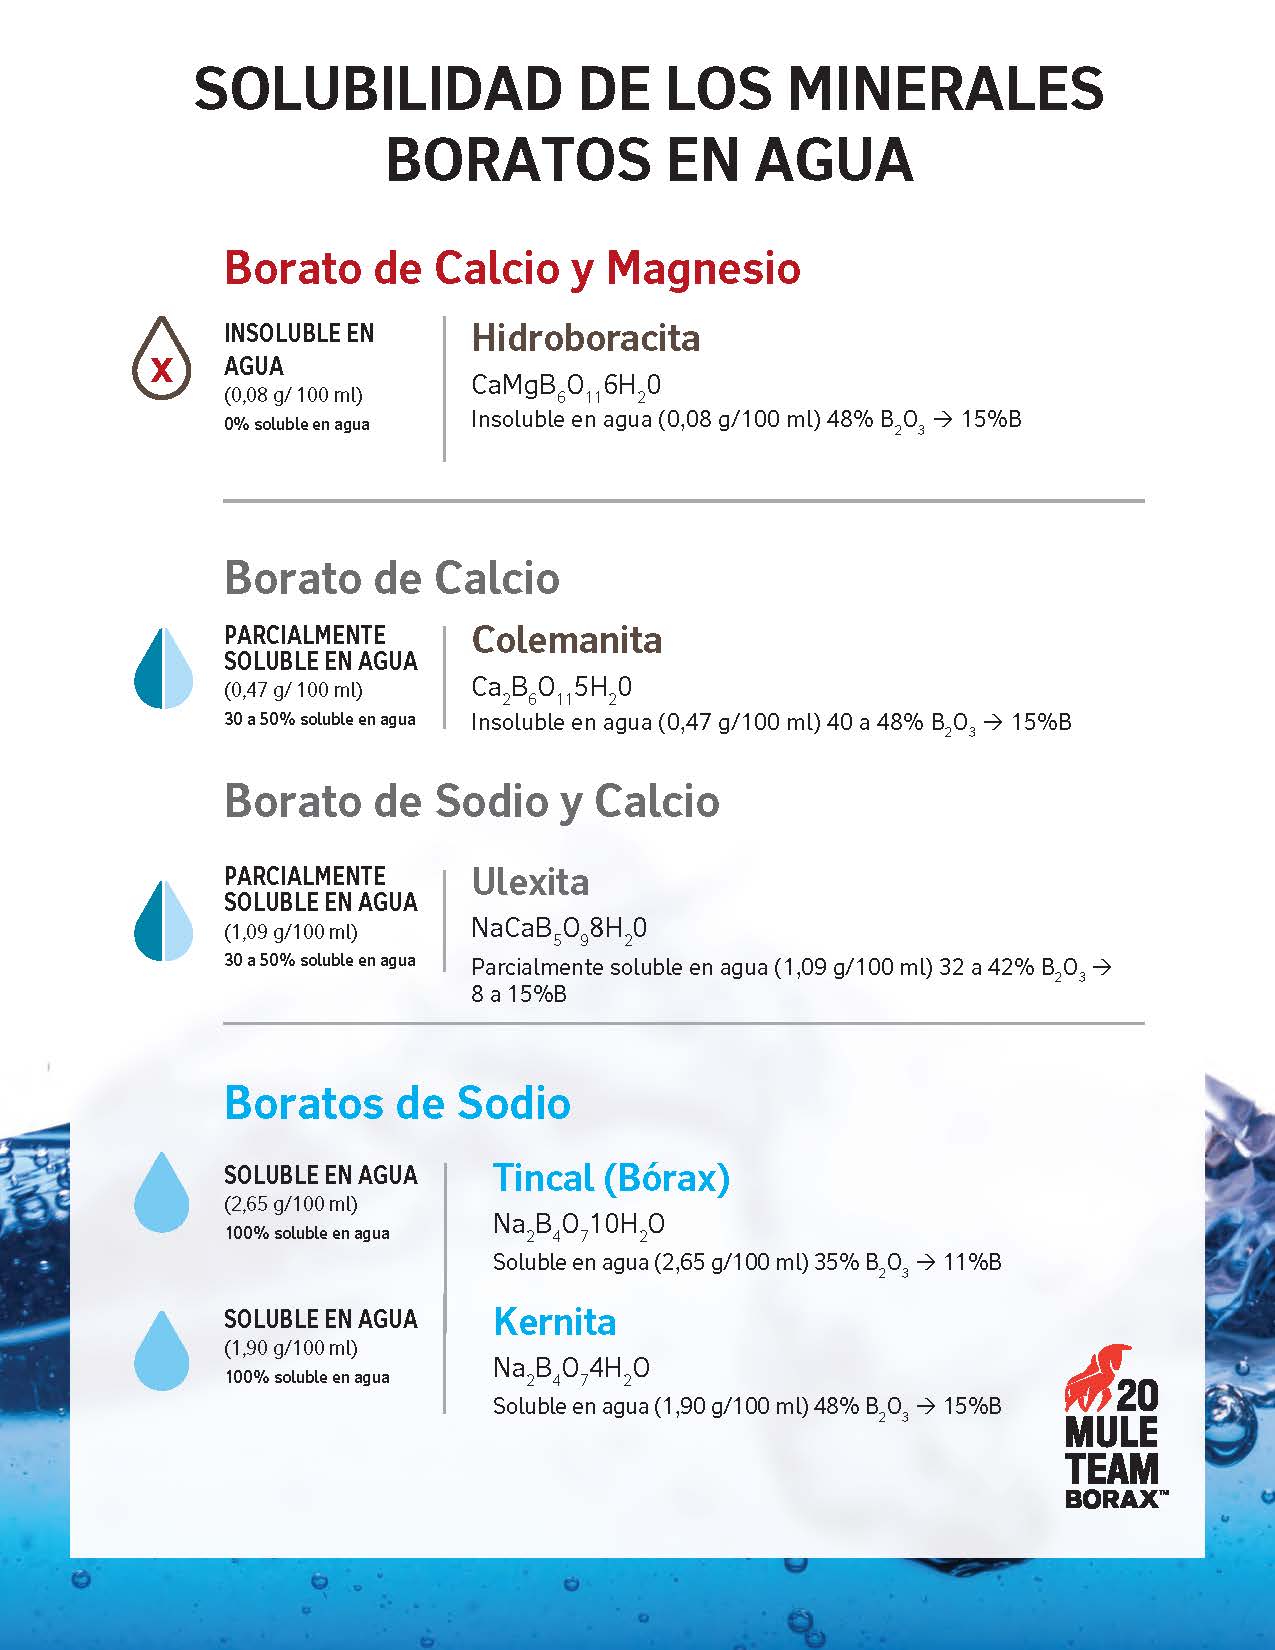 Solubilidad en agua de diferentes minerales de borato, incluidos borato de calcio/magnesio, borato de calcio, borato de sodio/calcio y boratos de sodio.